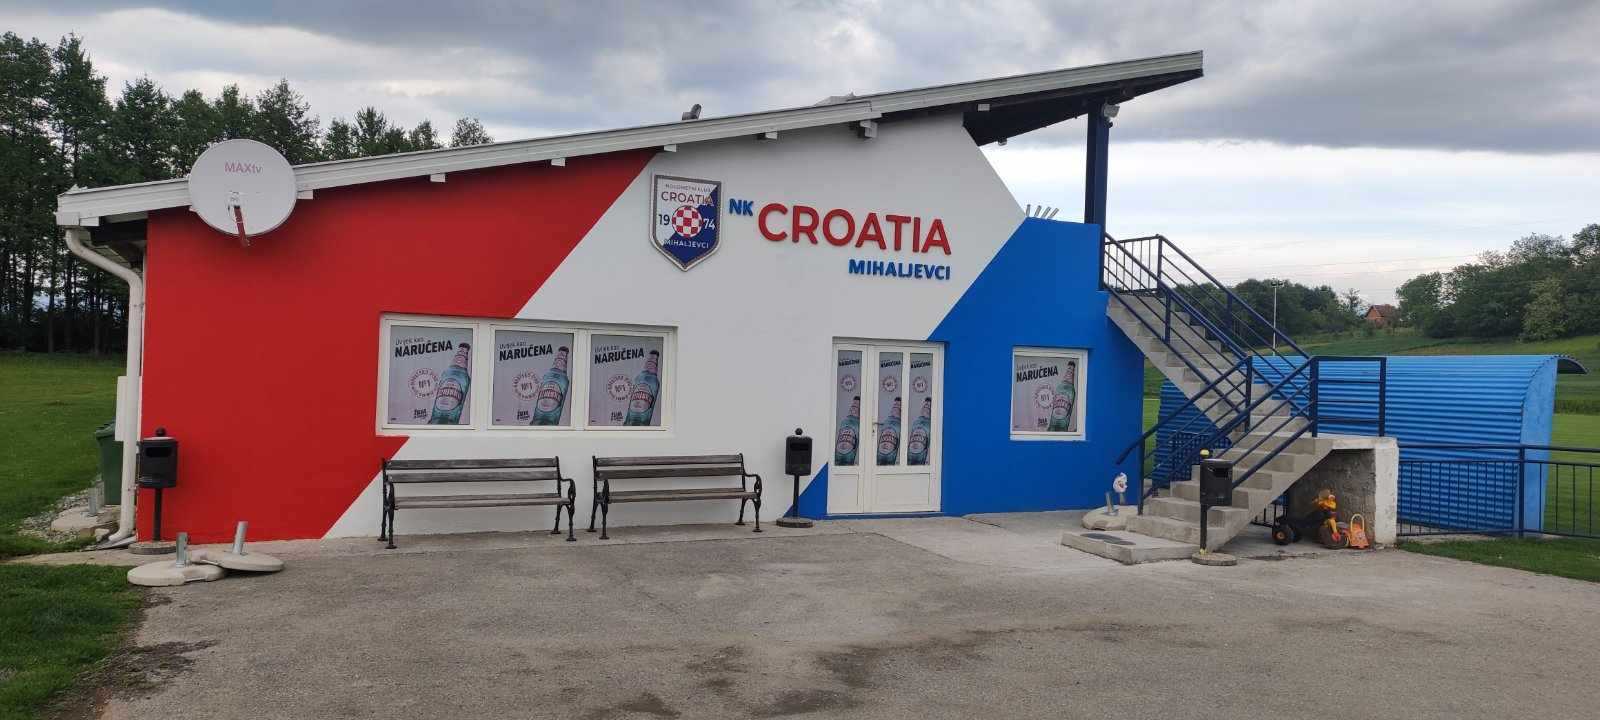 Pripreme za proslavu 50 godina Nogometnog kluba “Croatia” Mihaljevci u punom su jeku